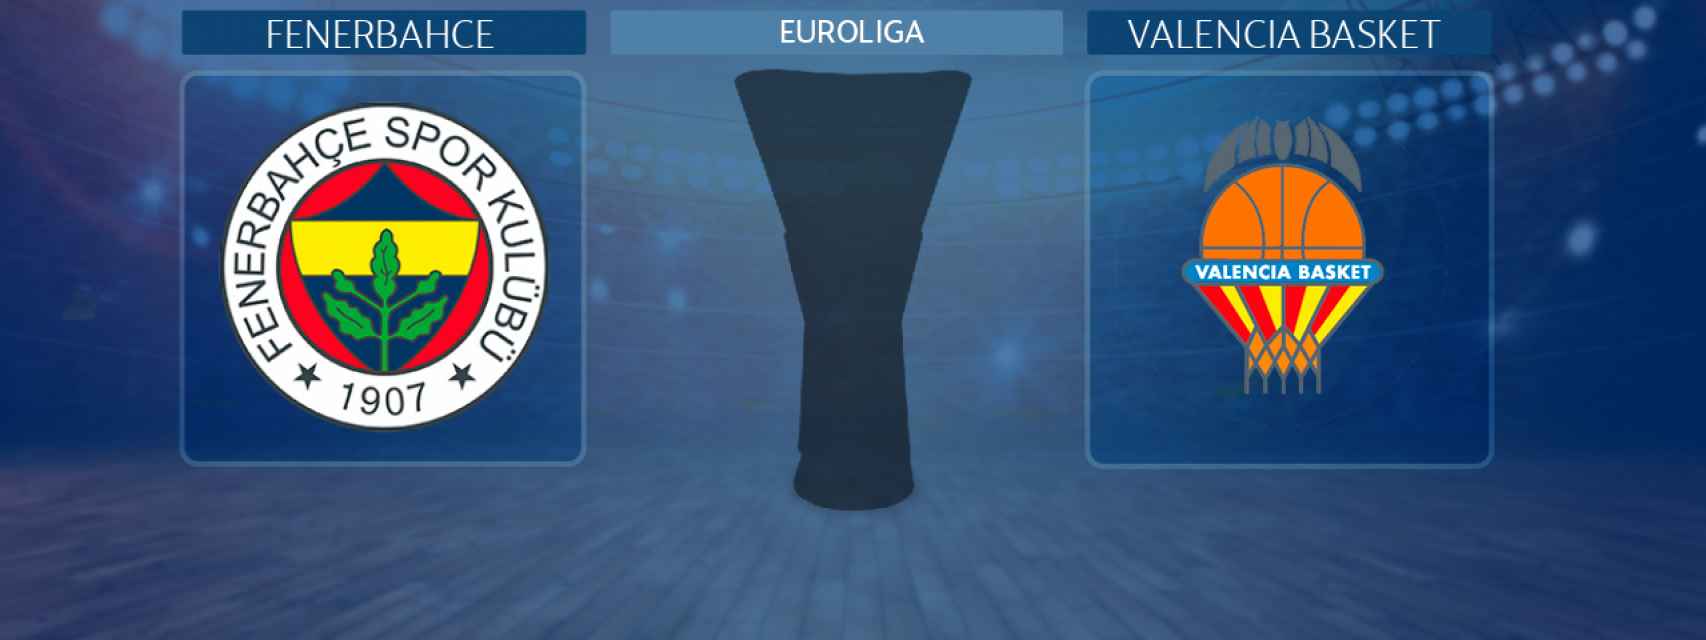 Fenerbahce - Valencia Basket, partido de la Euroliga